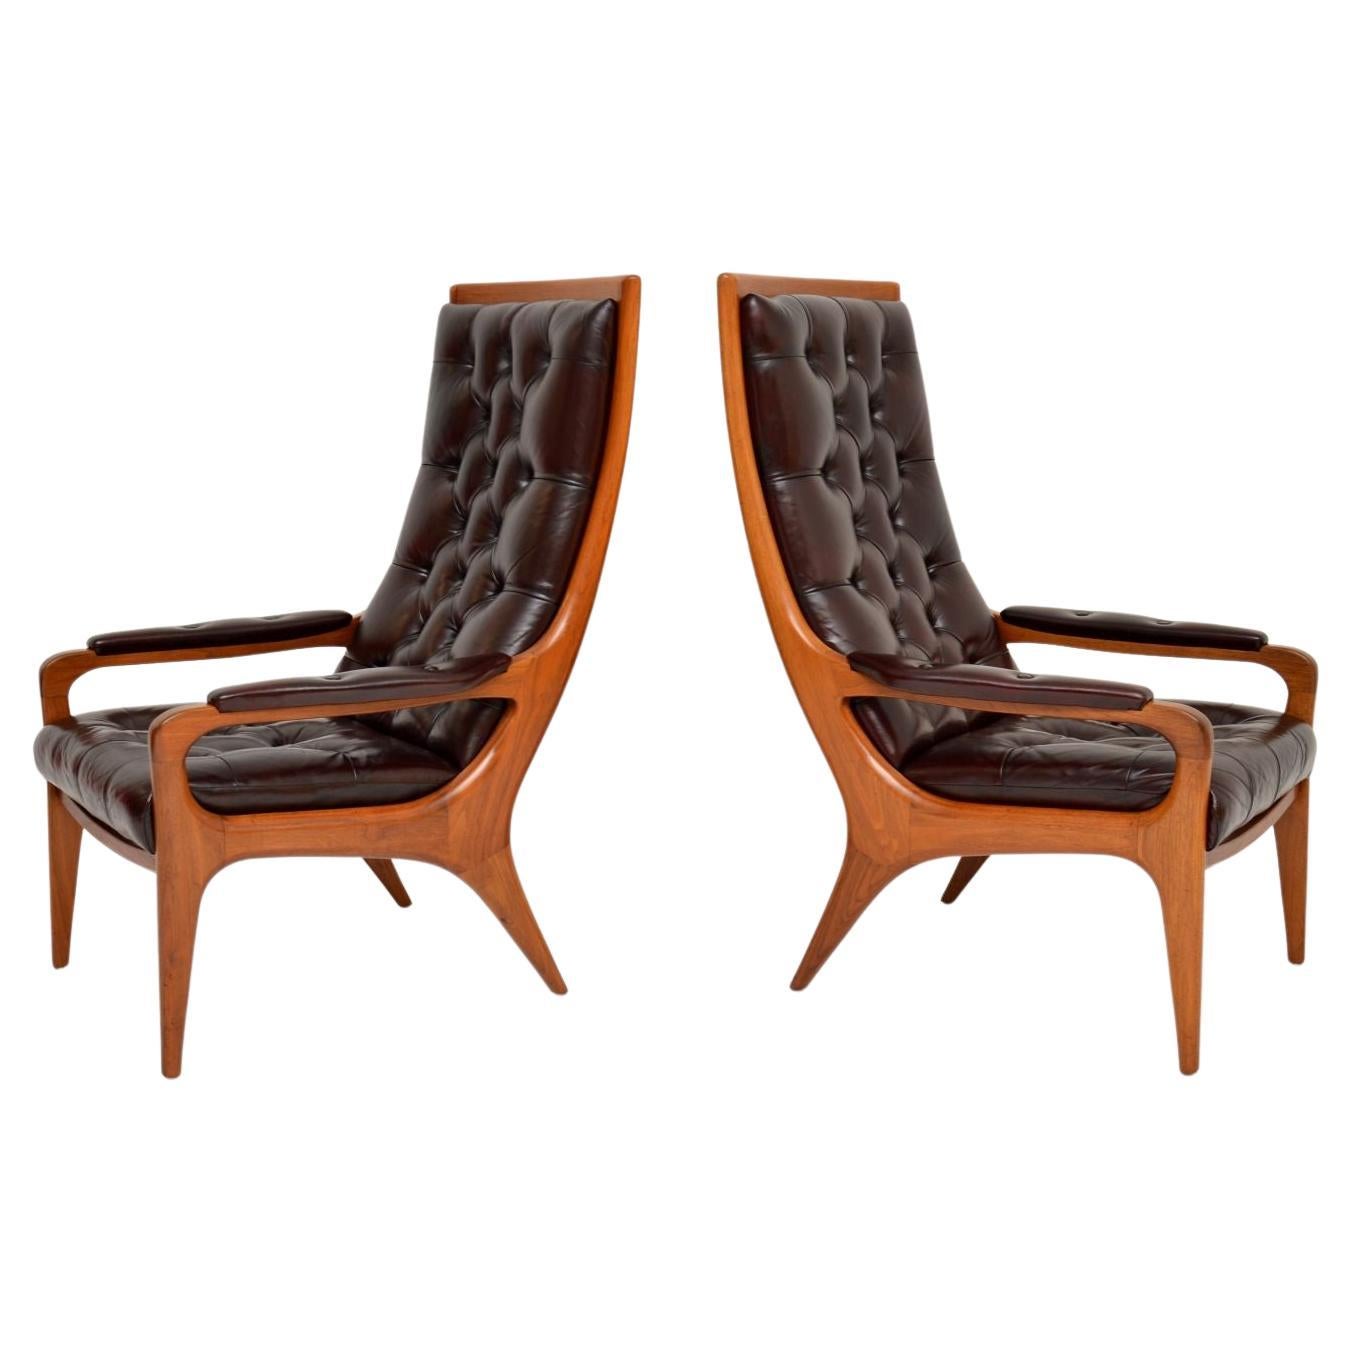 Superbe paire de fauteuils vintage en noyer et cuir de Howard By, datant des années 1960, magnifiquement recouverts d'un profond cuir boutonné. Fabriquées en Angleterre par Howard Keith, elles datent des années 1960.

Ils sont d'une superbe qualité,